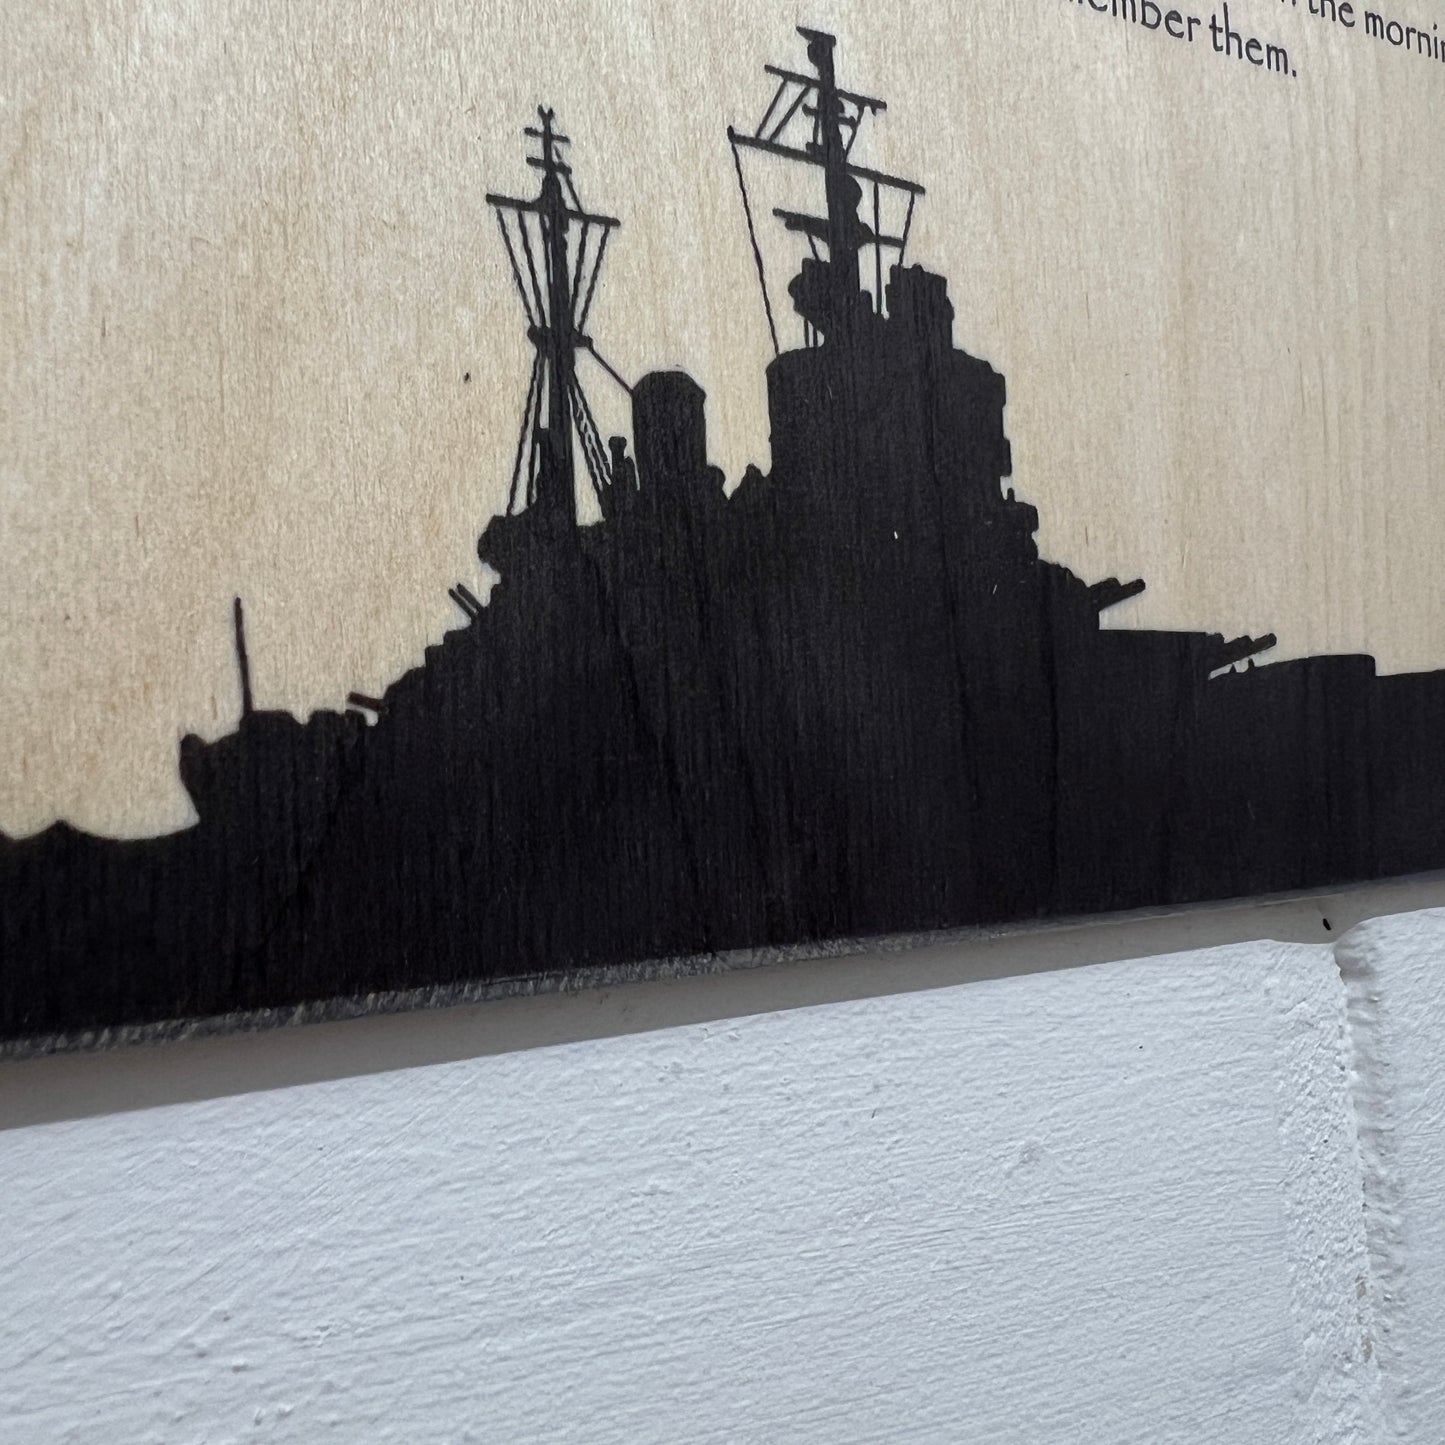 Battle Ship Remembrance Poppy Plaque